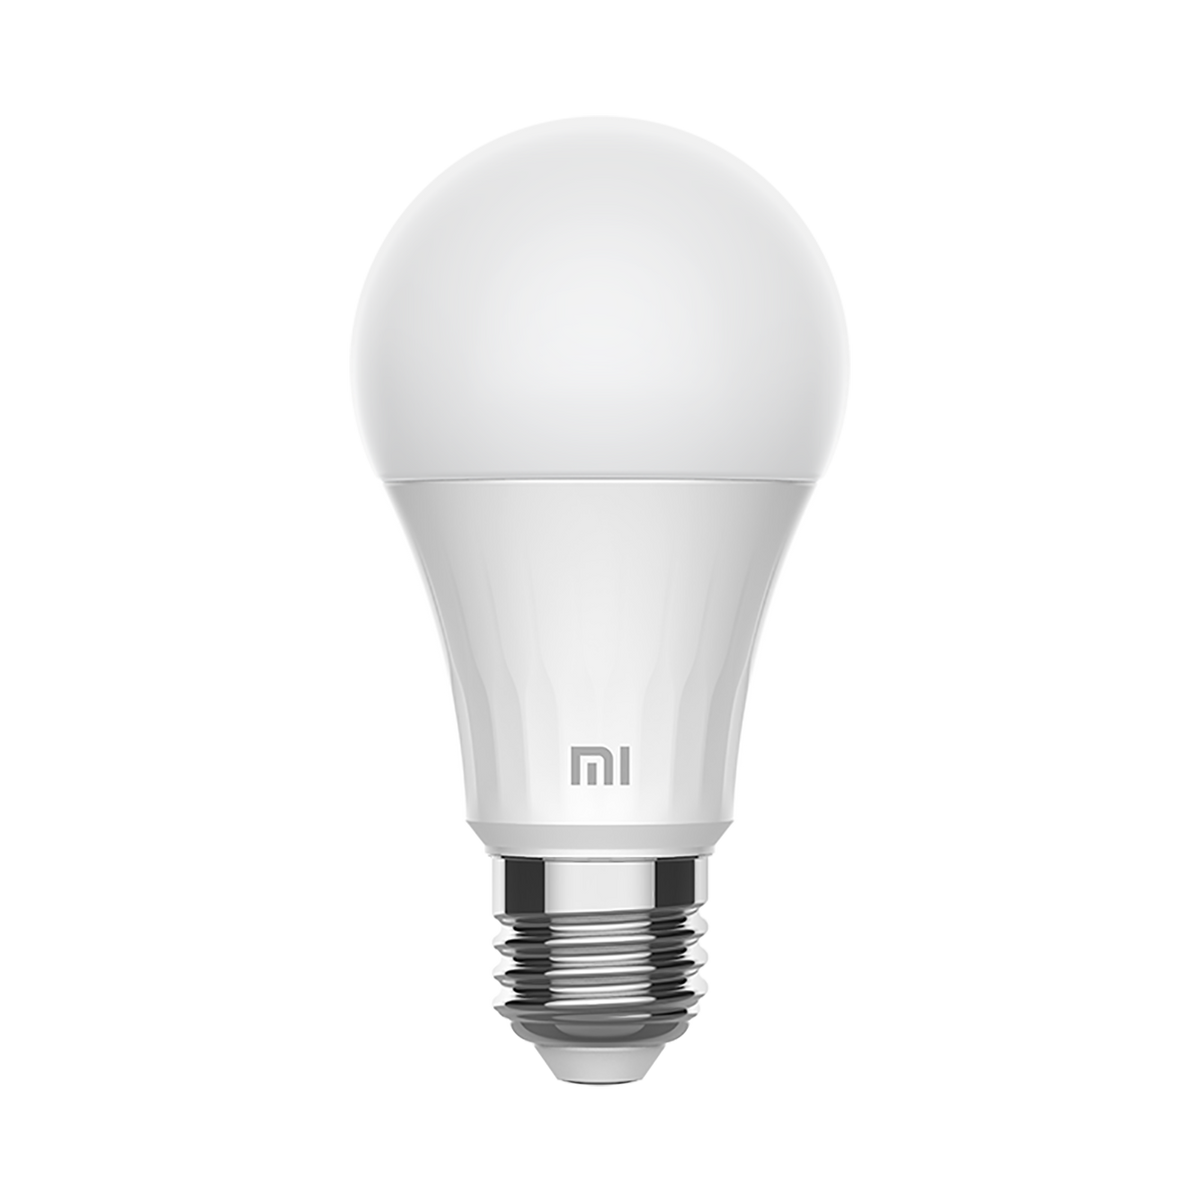 Xiaomi Mi Smart E27 LED Bulb - Warm White